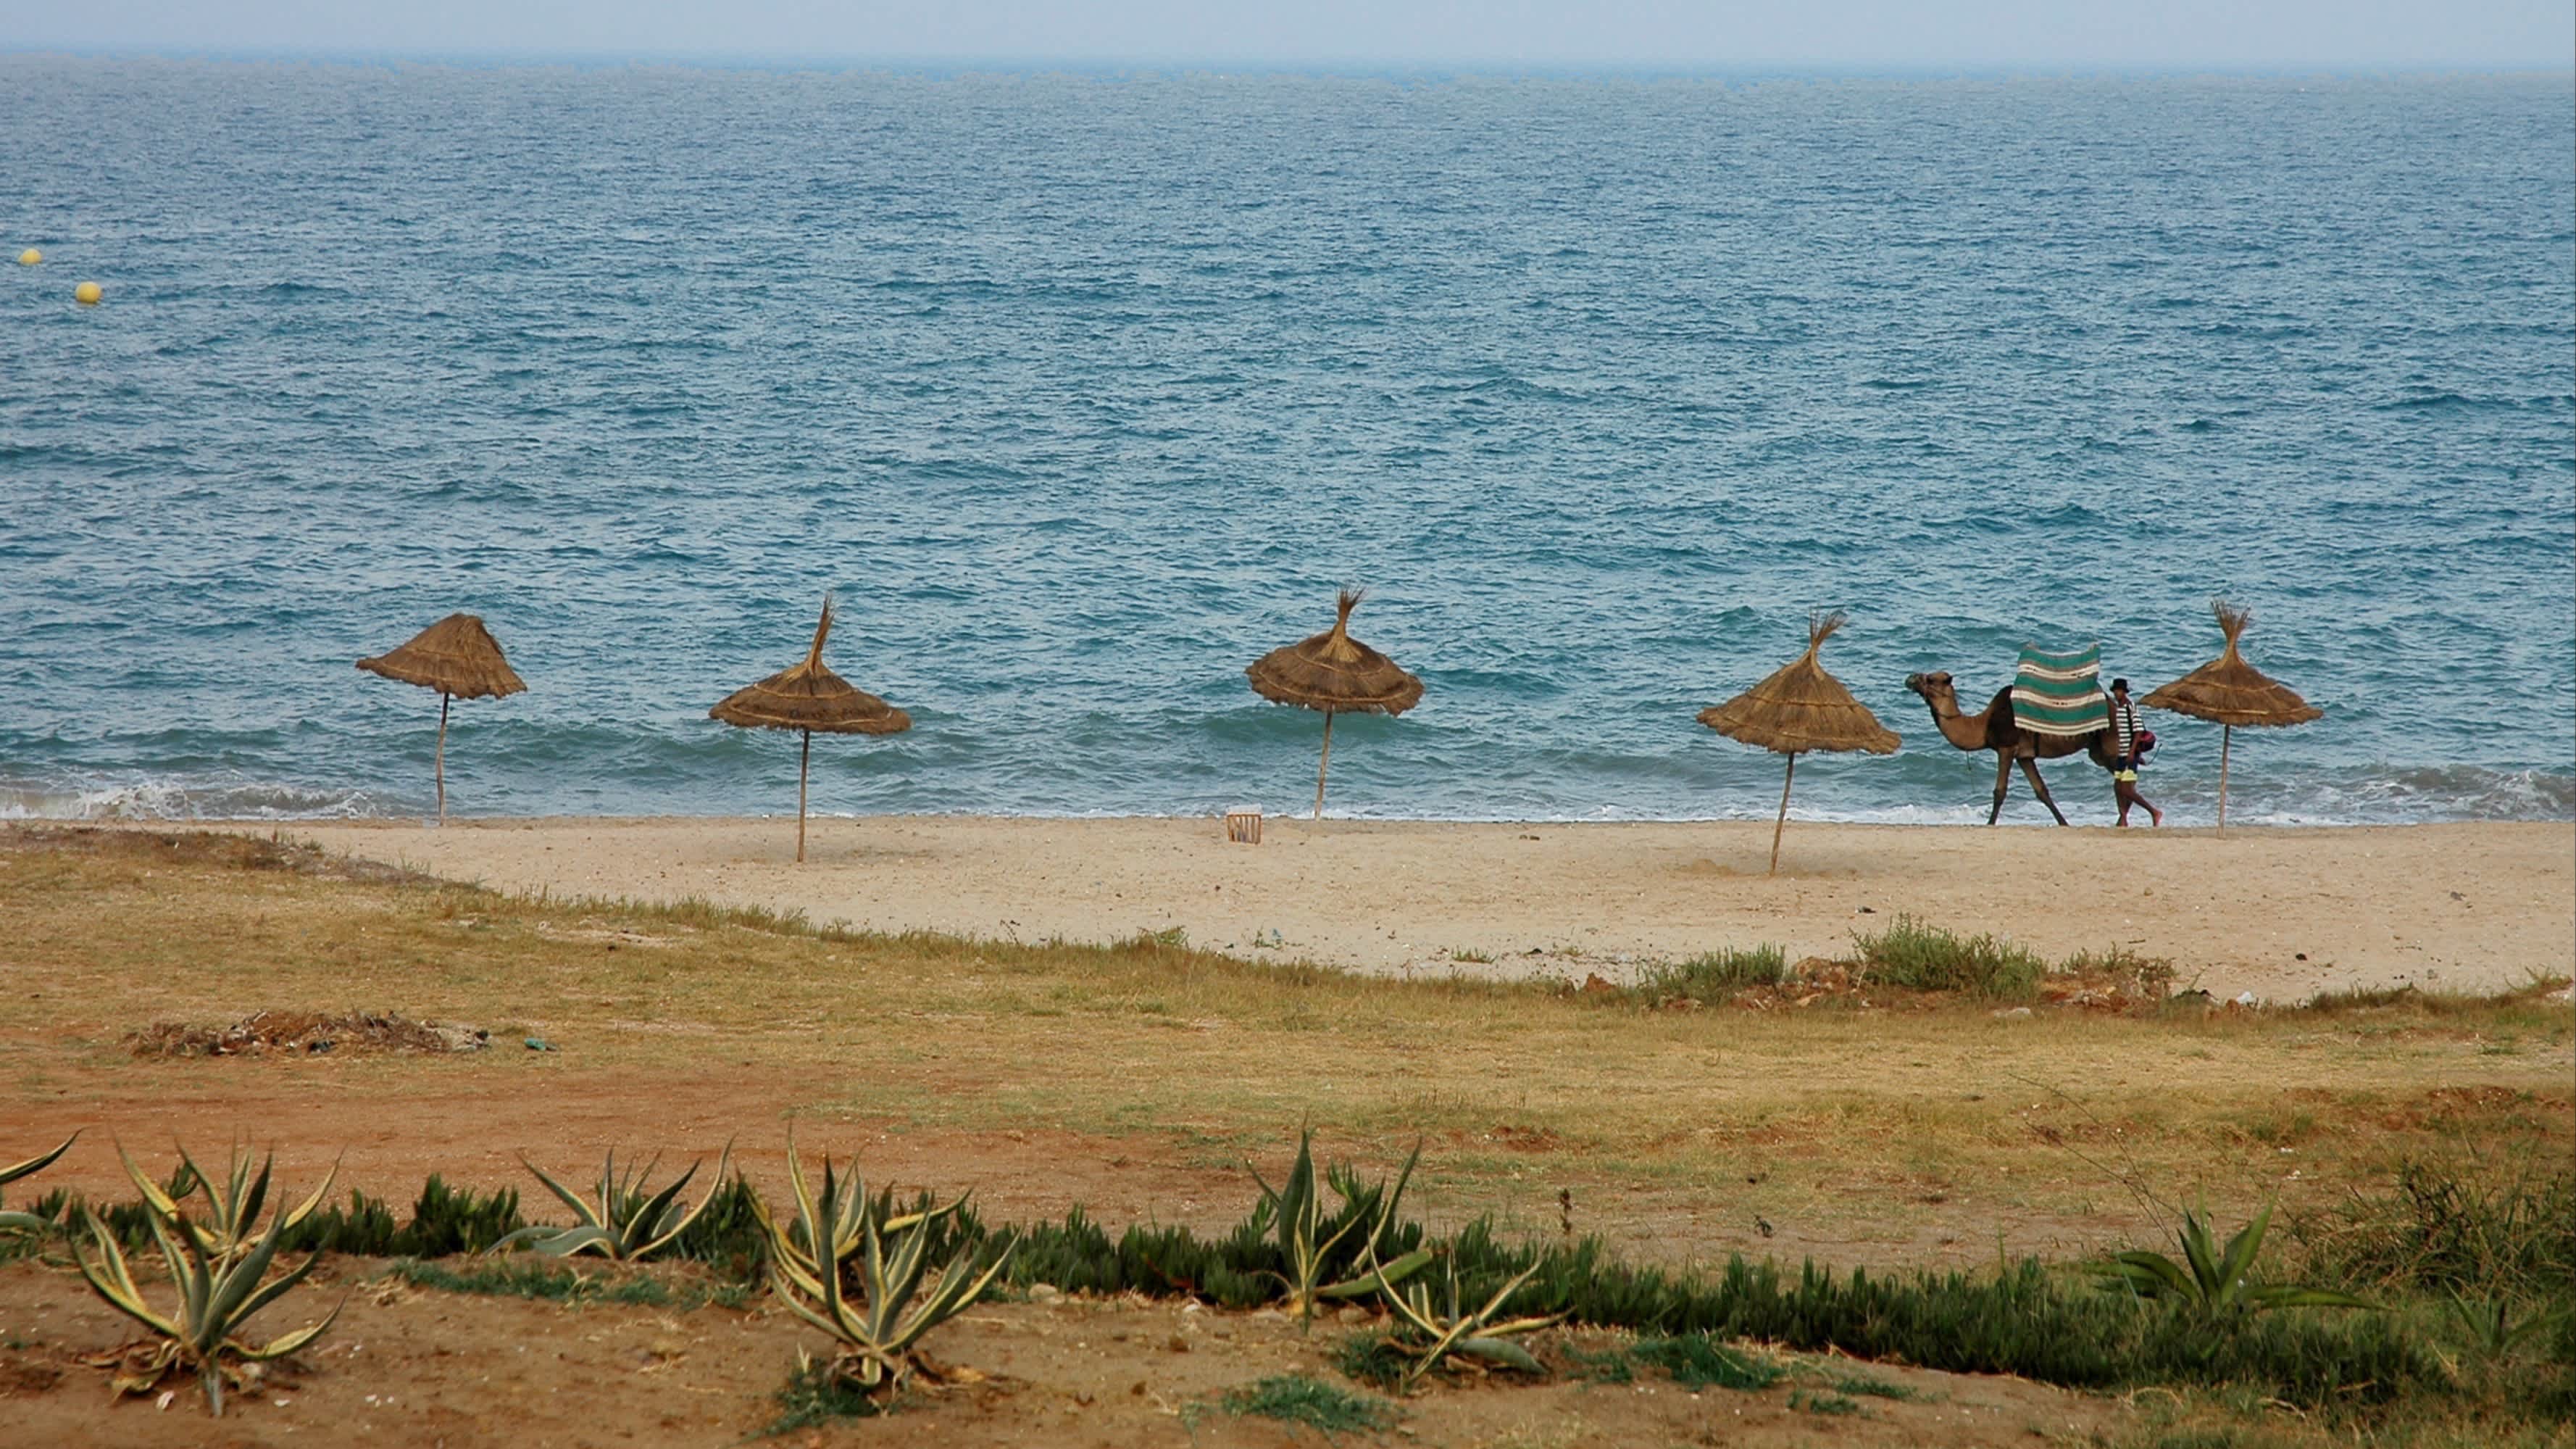 Blick auf den Strand von M'Diq im Norden Marokkos mit Sonnenschirmen sowie einem Kamel am Strand.